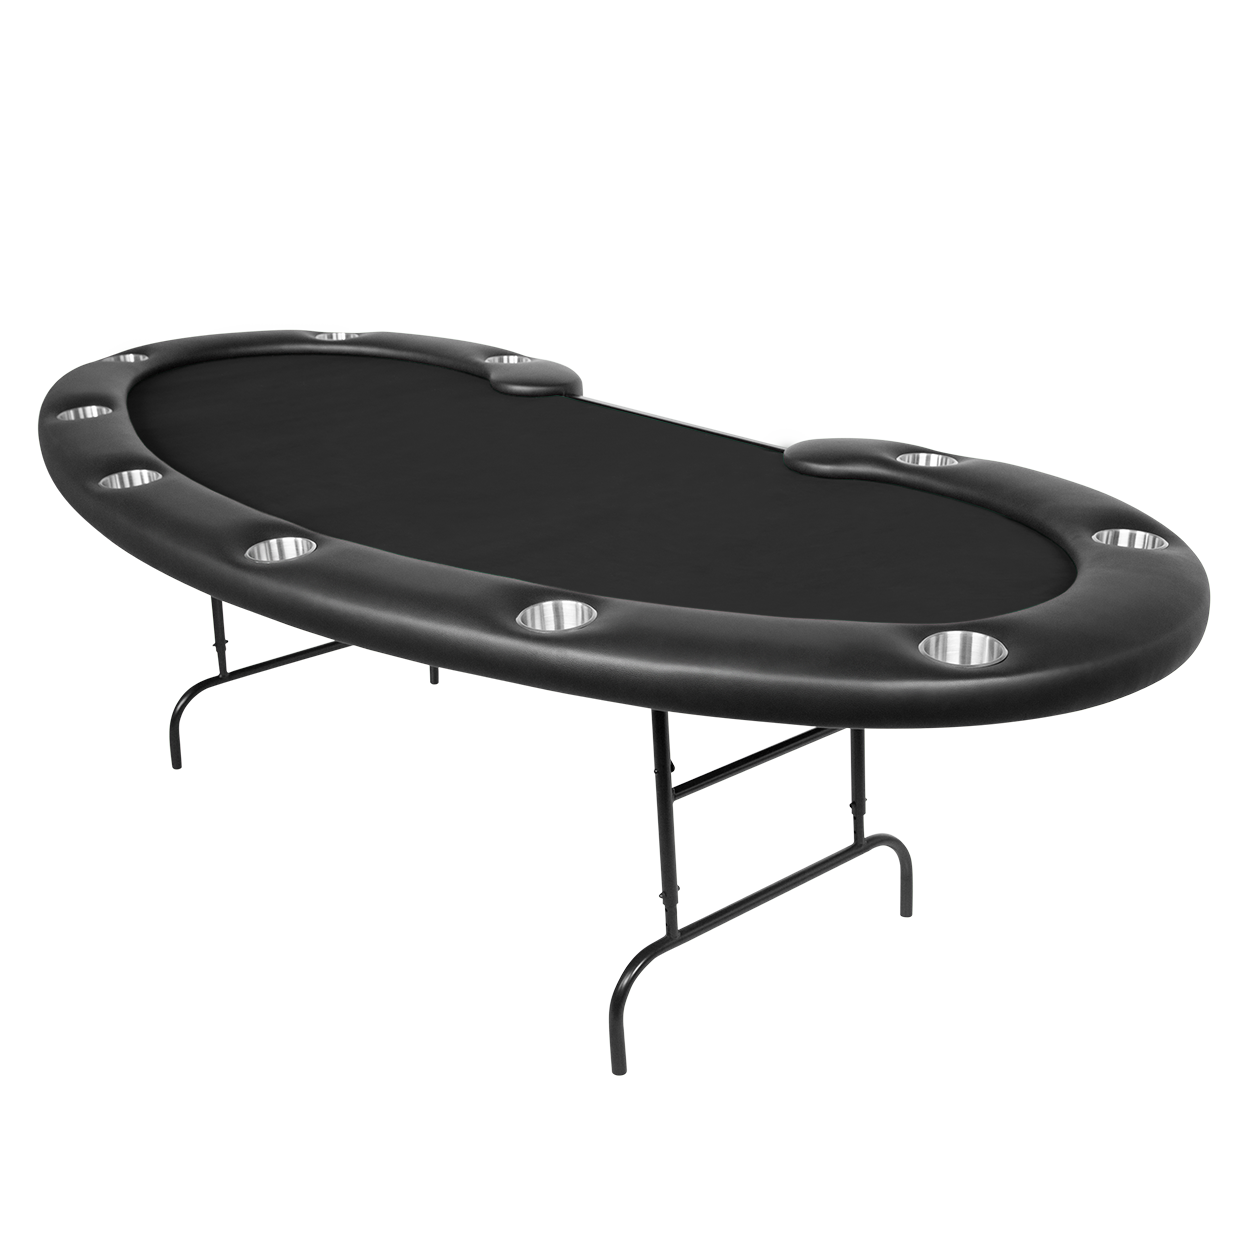 Kidney shaped folding poker table with black velveteen game top.